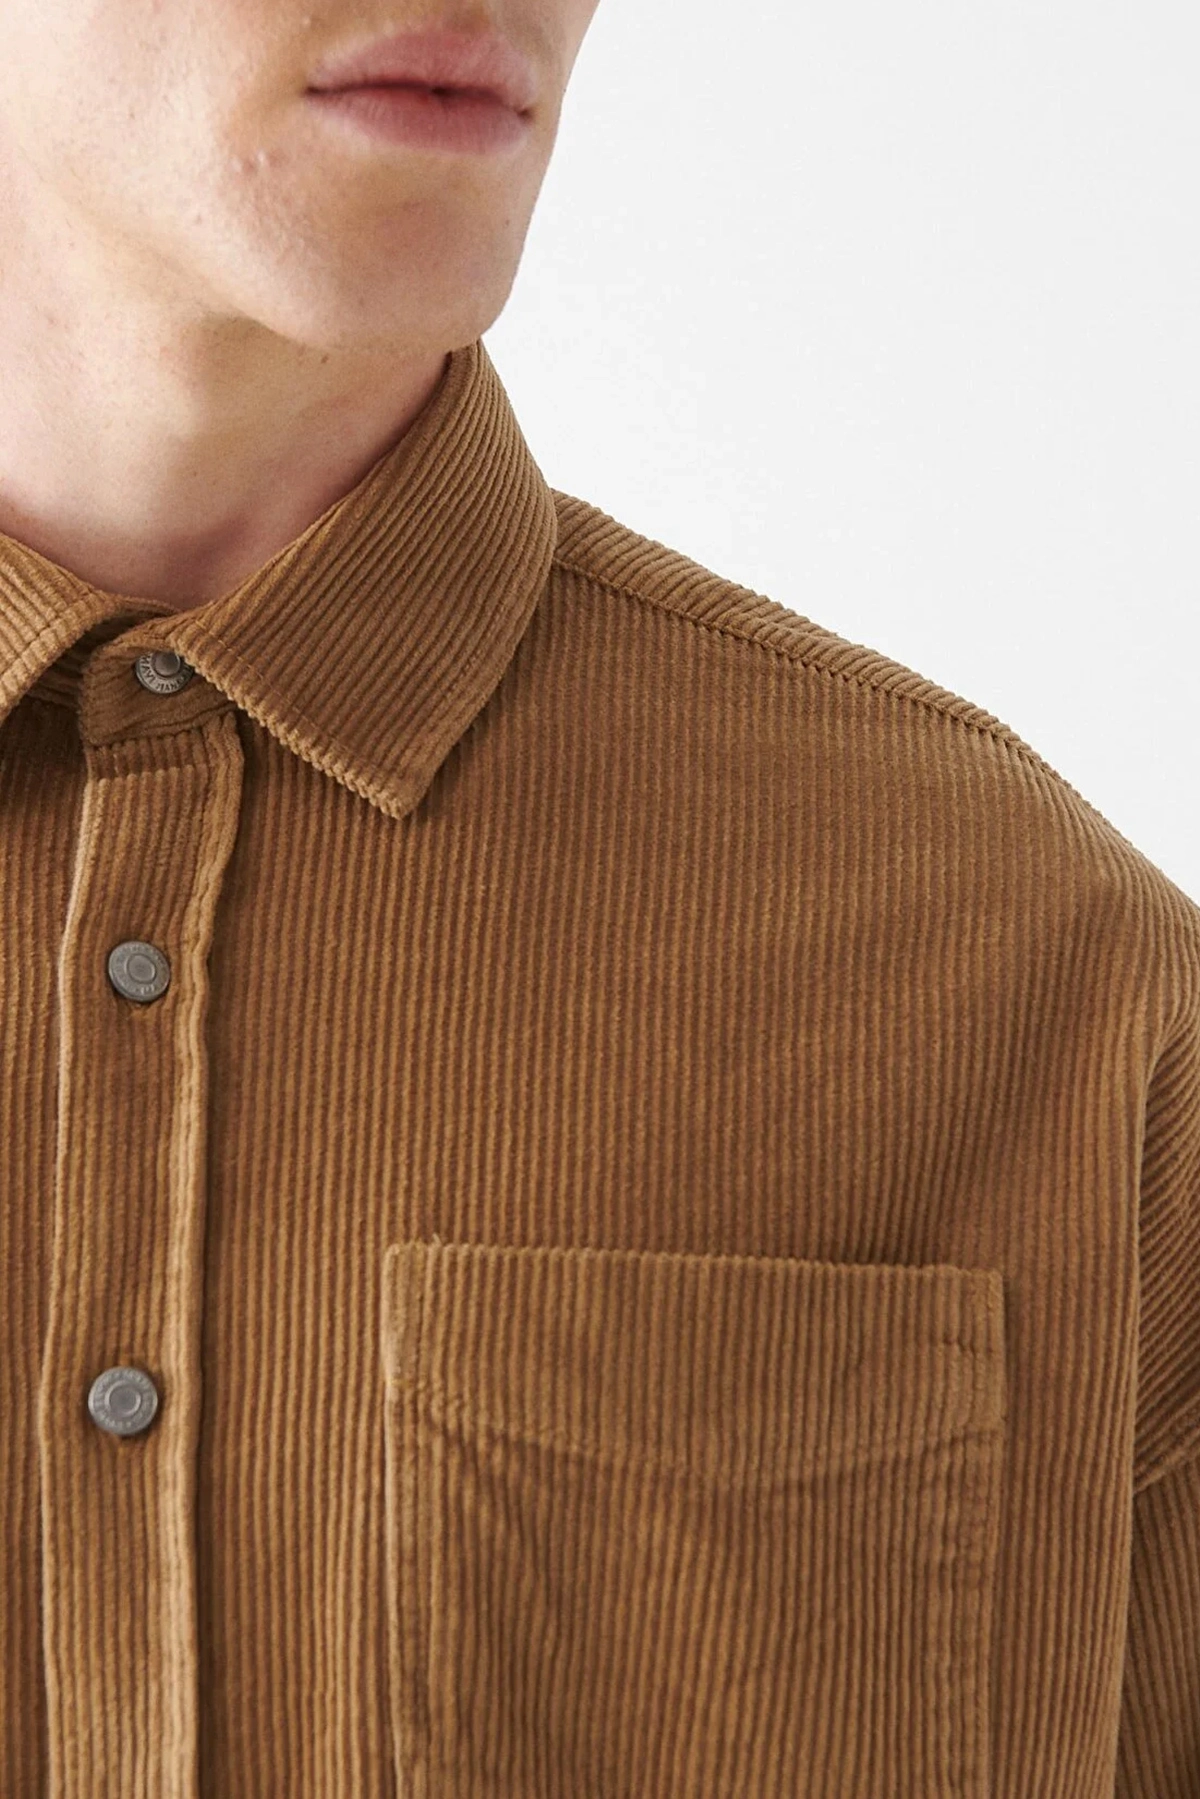 پیراهن مخمل کبریتی مردانه قهوه ای روشن برند Mavi